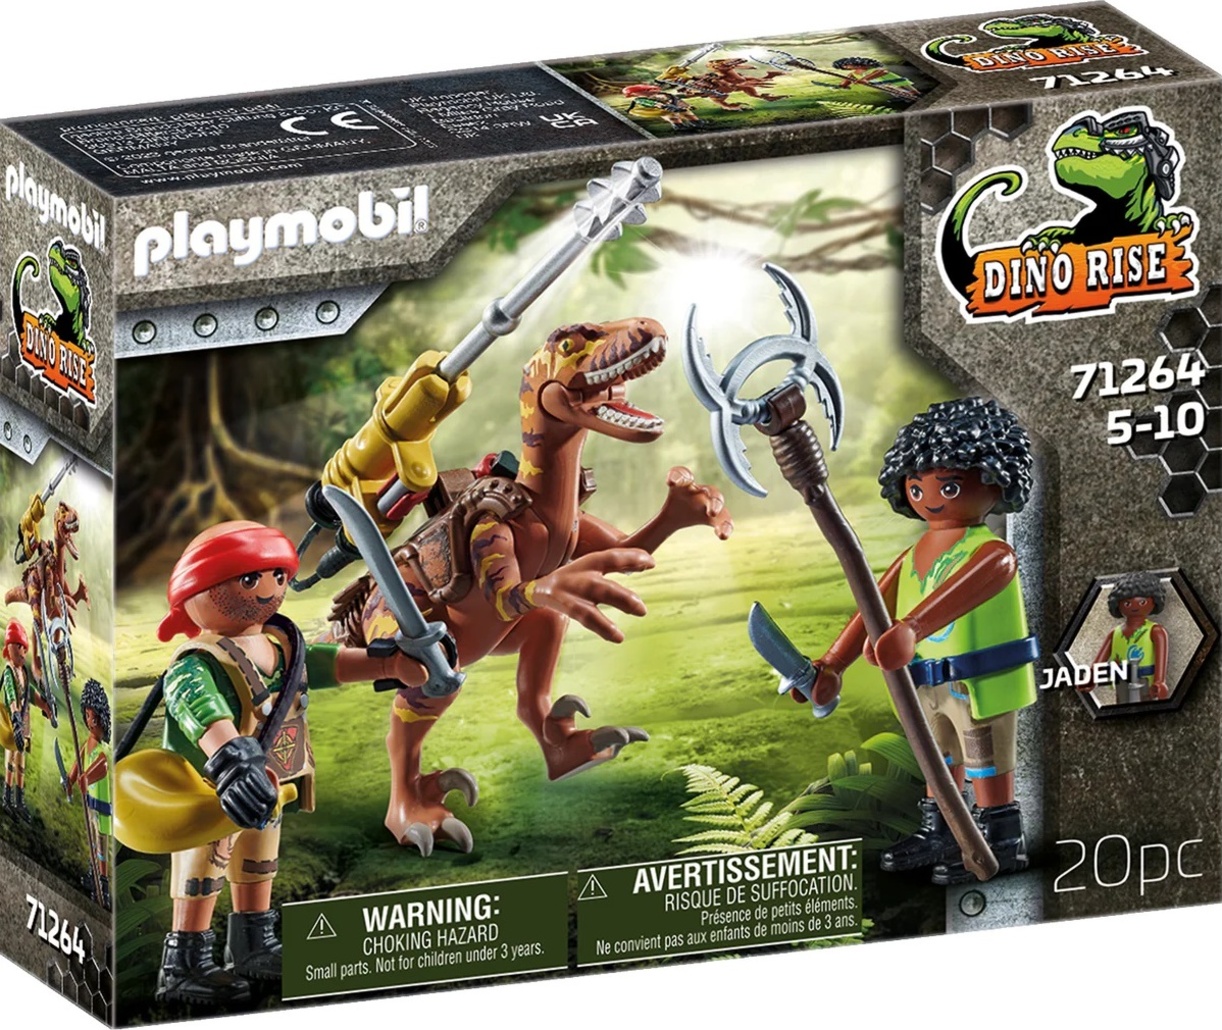 PLAYMOBIL Dino Rise 71264 Deinonychus